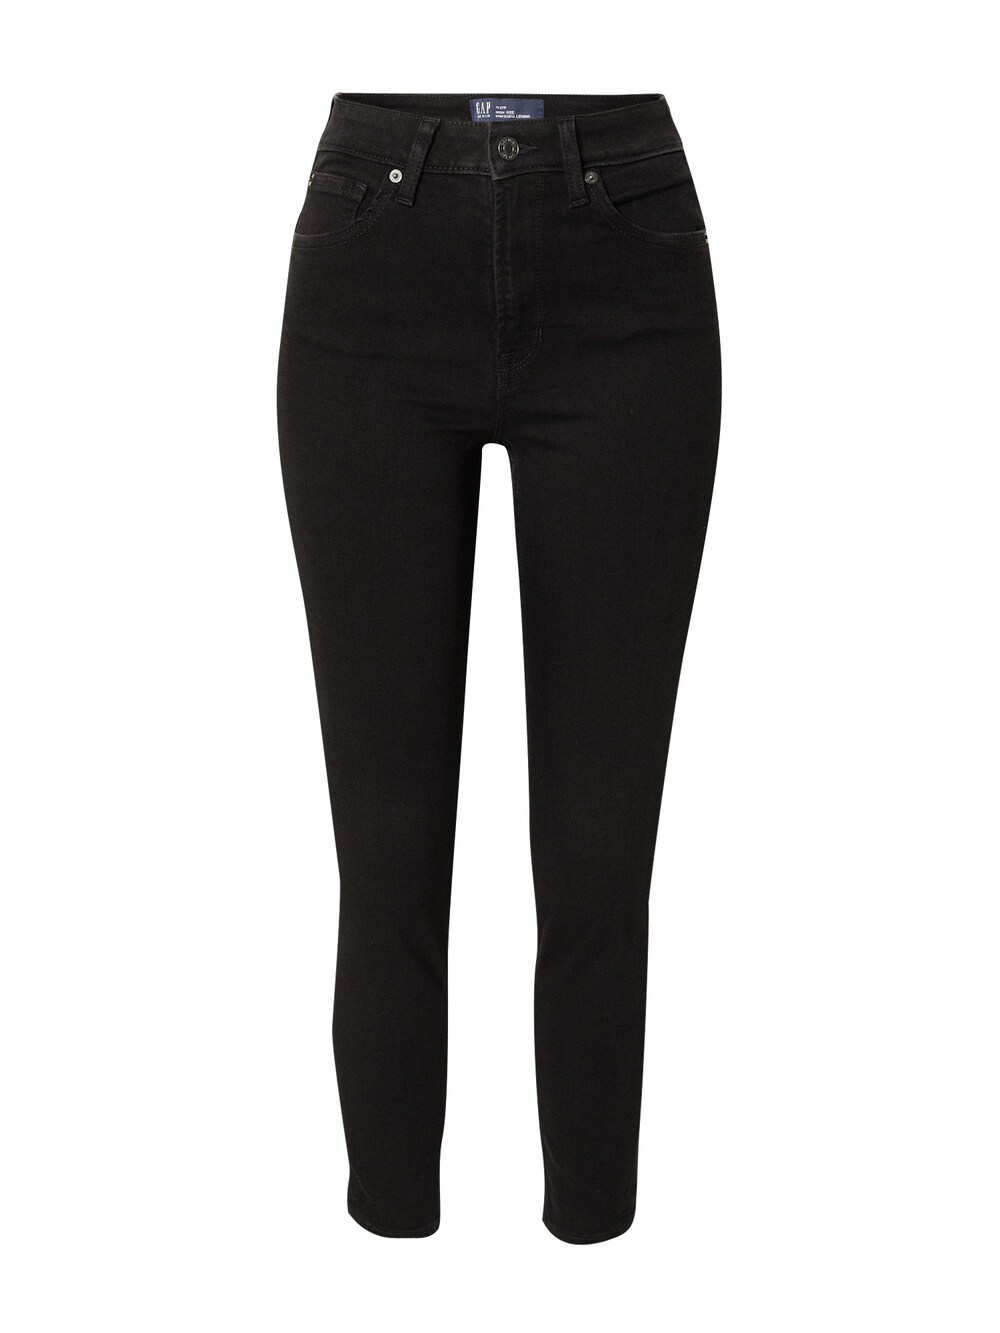 Узкие джинсы Gap CLERMONT, черный узкие джинсы gap черный